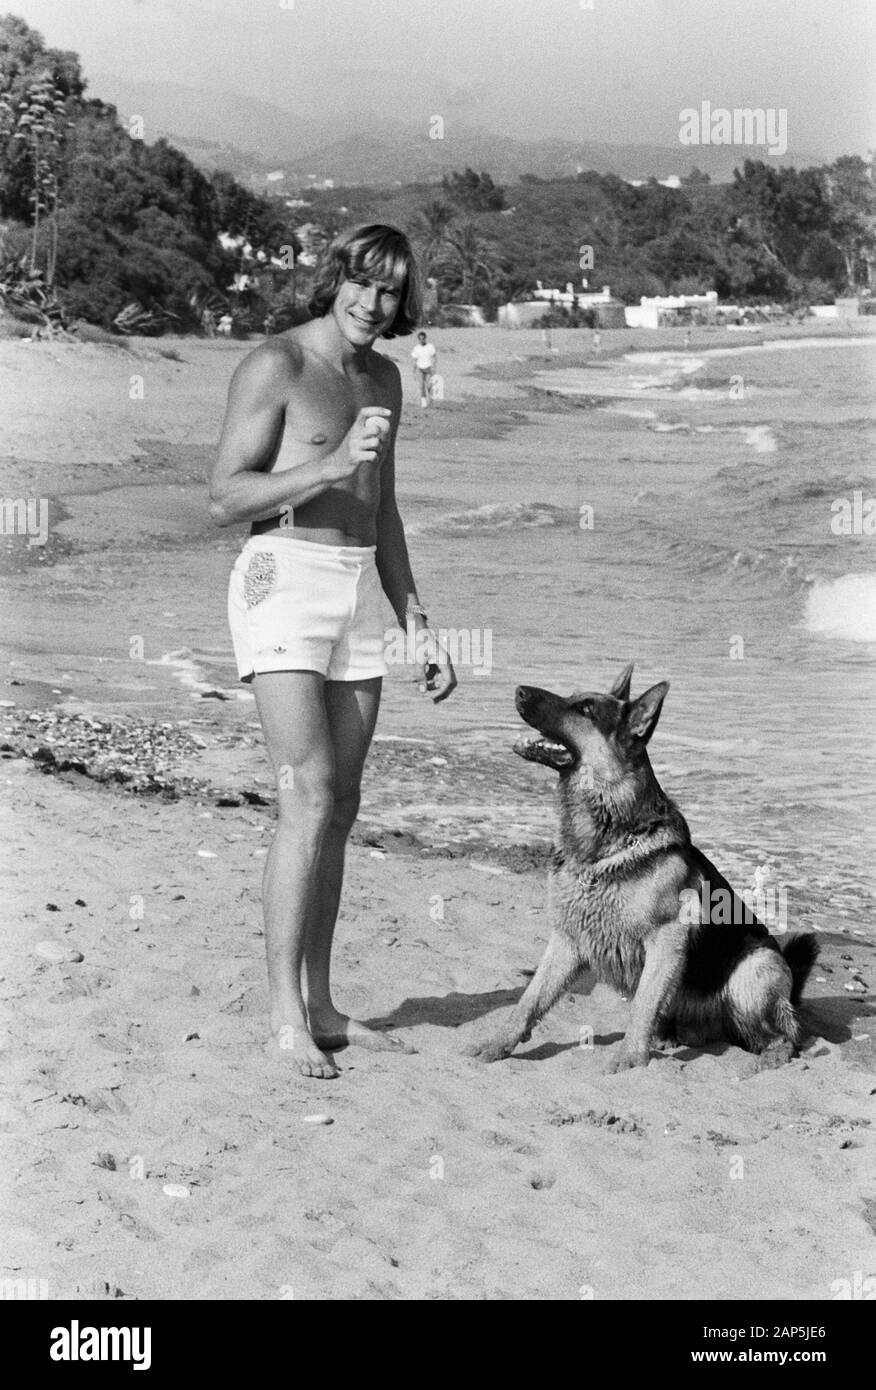 James Hunt, britischer Autorennfahrer, mit seinem Hund am Strand, um 1974. British car racing driver James Hunt with his pet dog on the beach, around 1974. Stock Photo